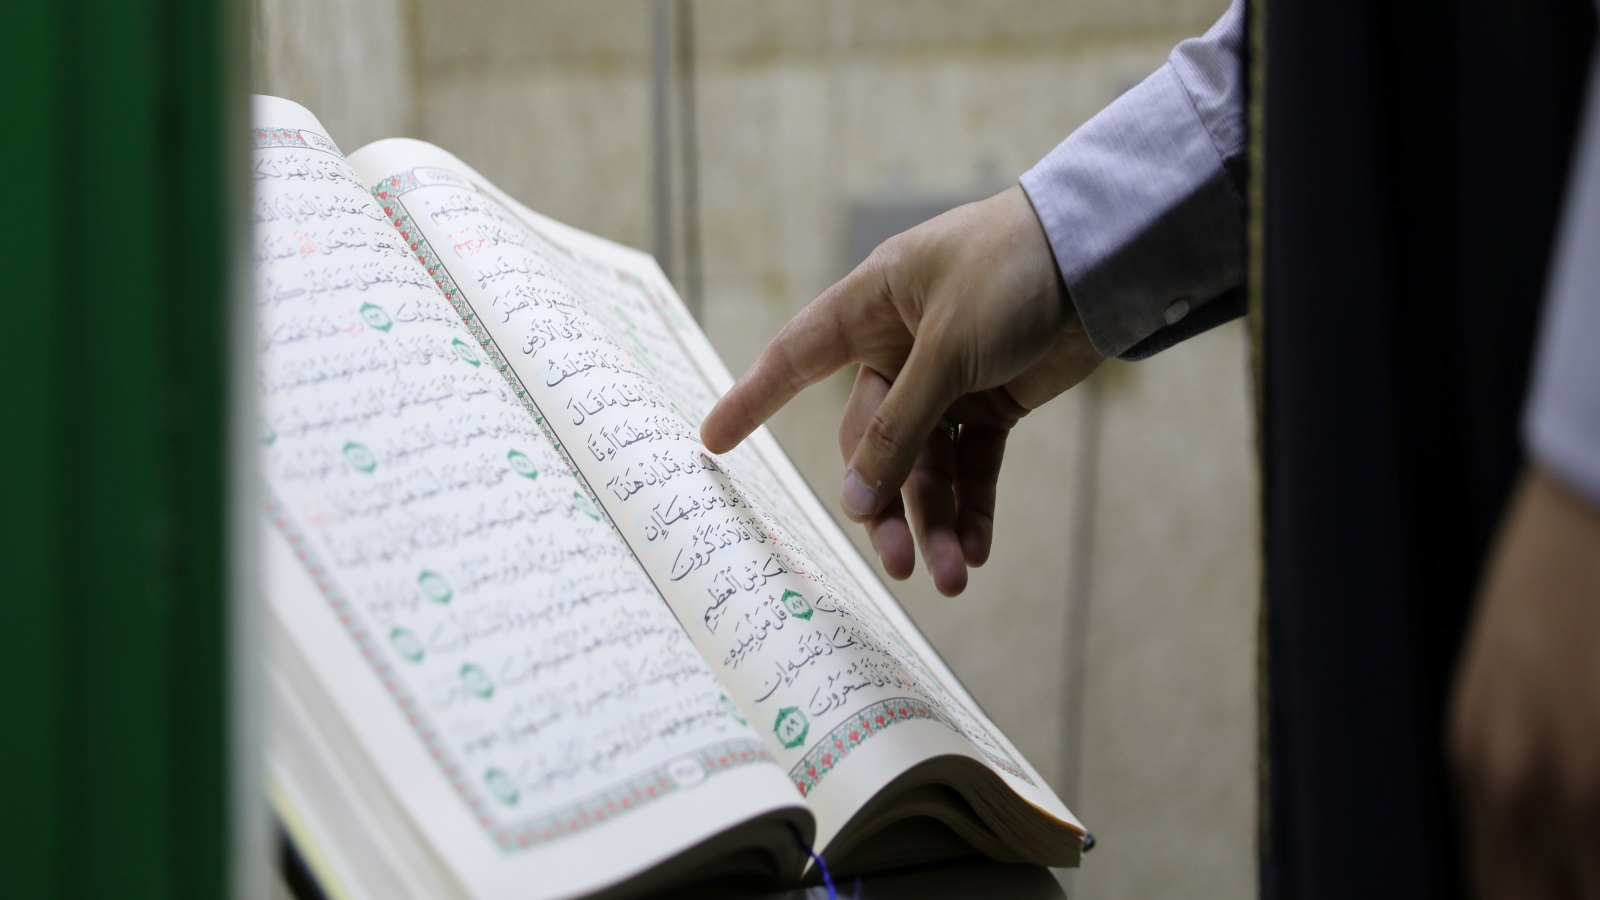 المسلمات محرّمات على المشركين منهم بالقرآن بكلّ حال، وعلى مشركي أهل الكتاب لقطع الولاية بين المسلمين والمشركين